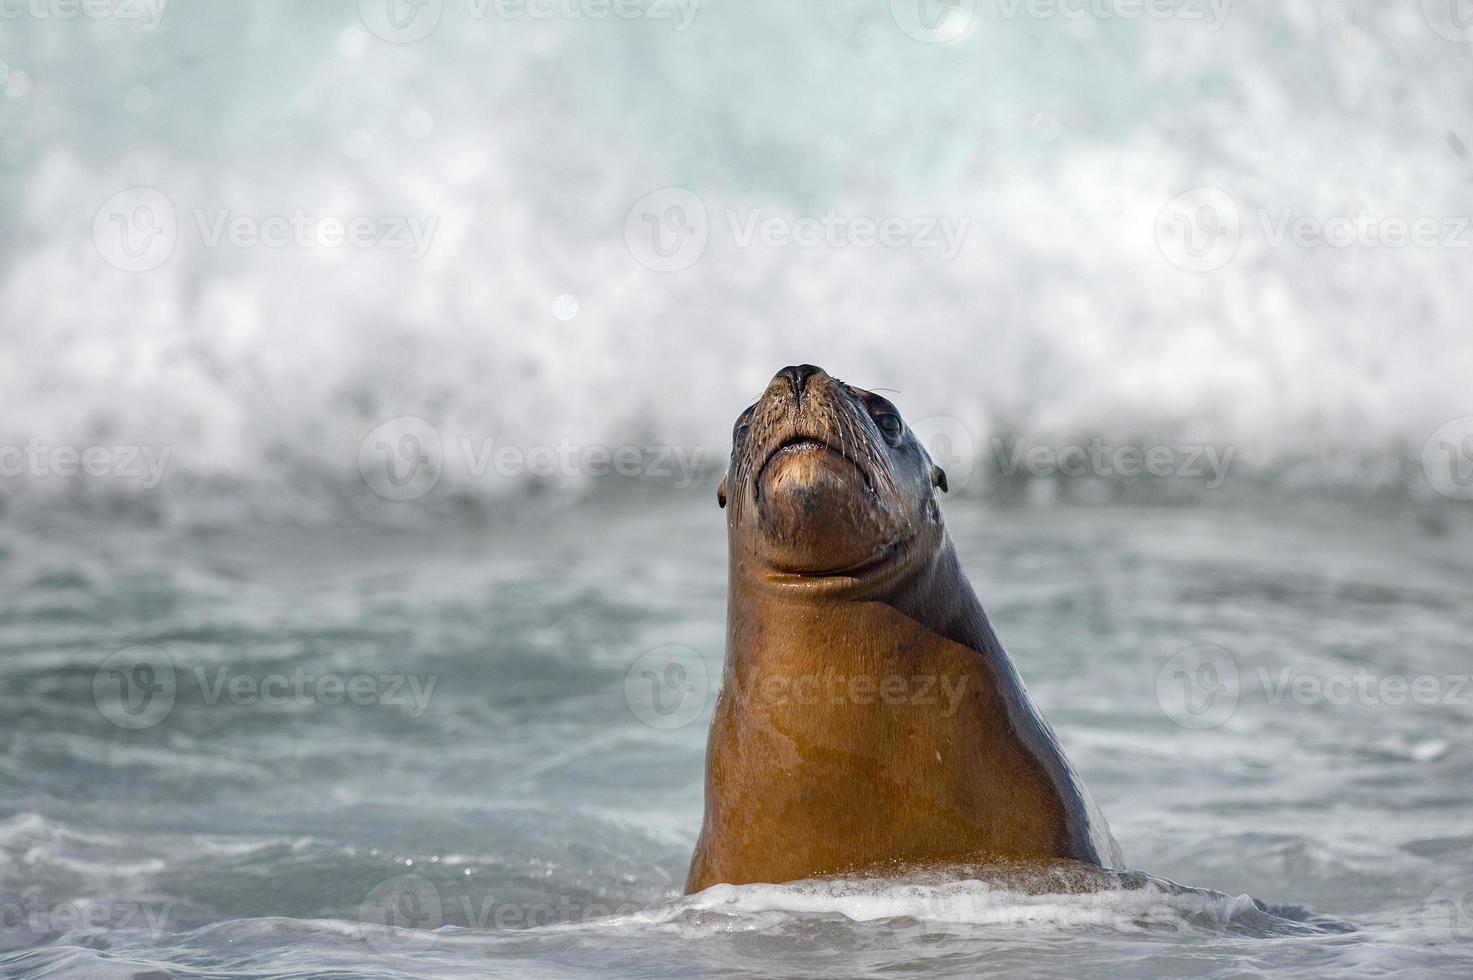 león marino sobre espuma y ola marina foto